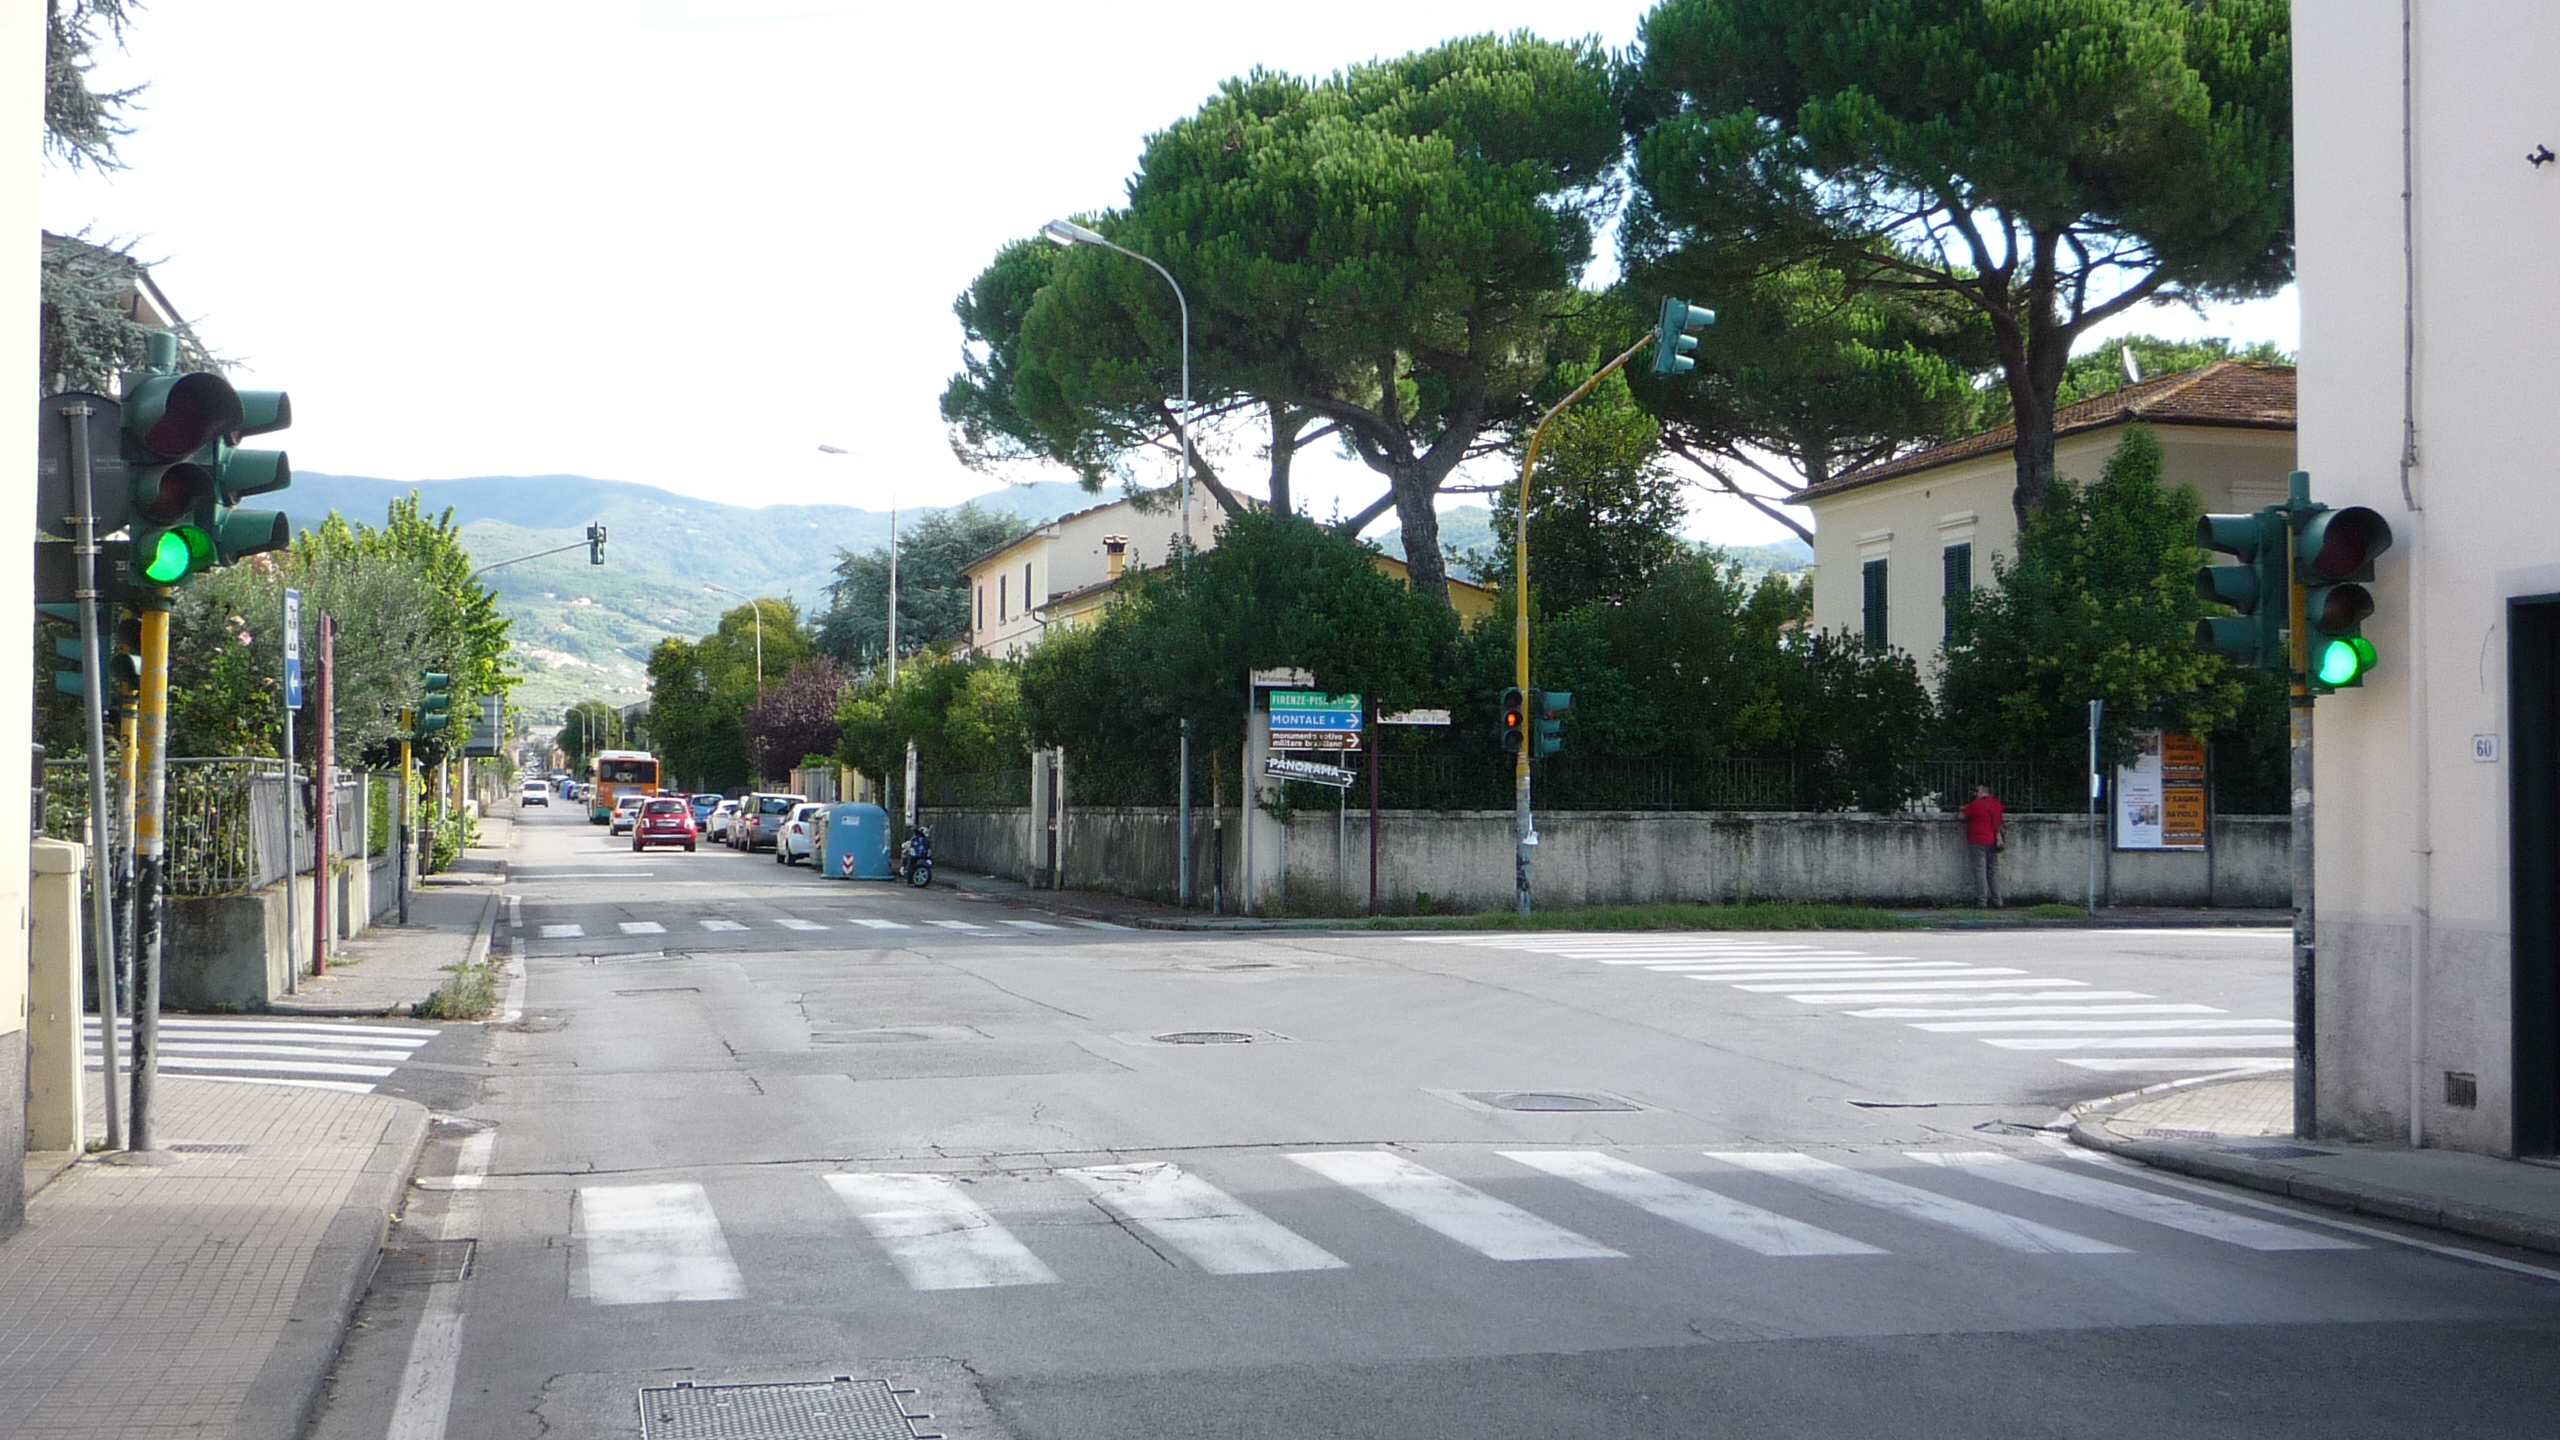 foto dell’intersezione di via Antonelli e via Sestini dove verrà allestita la nuova rotatoria e dove inizierà il senso unico in direzione nord (verso Candeglia)